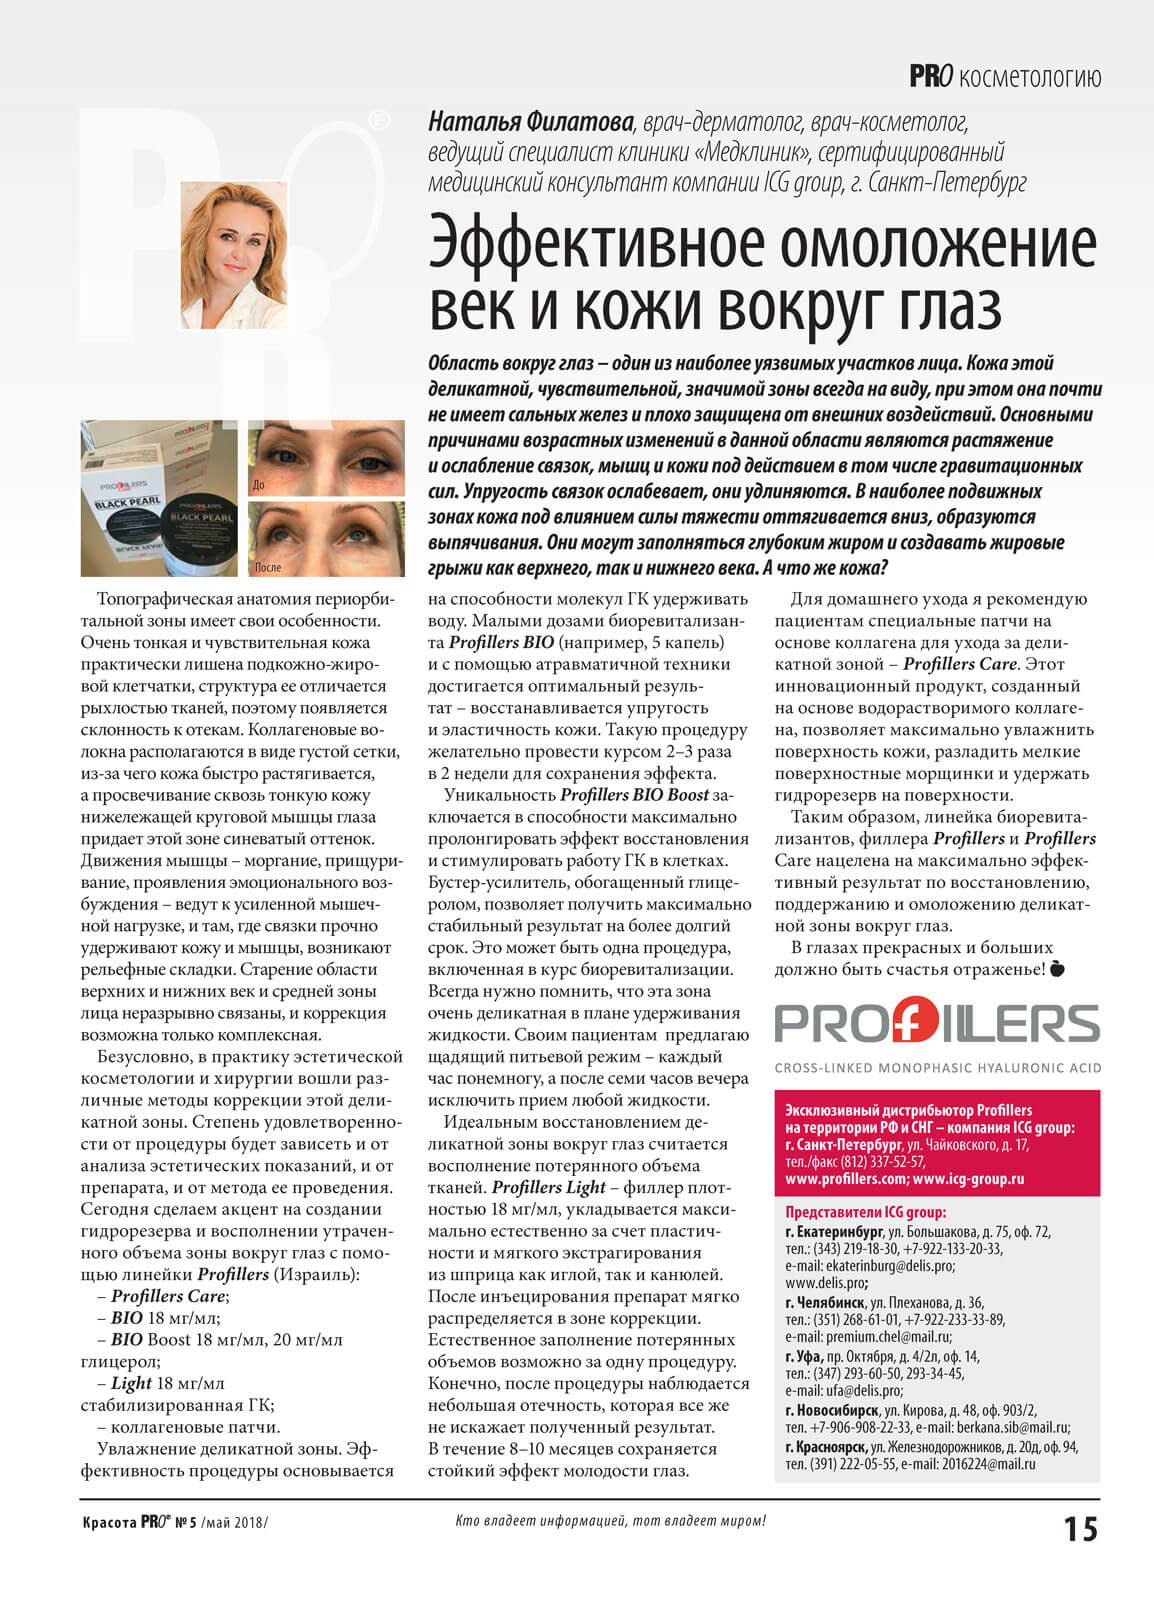 Эффективное омоложение век и кожи вокруг глаз, статья Филатовой